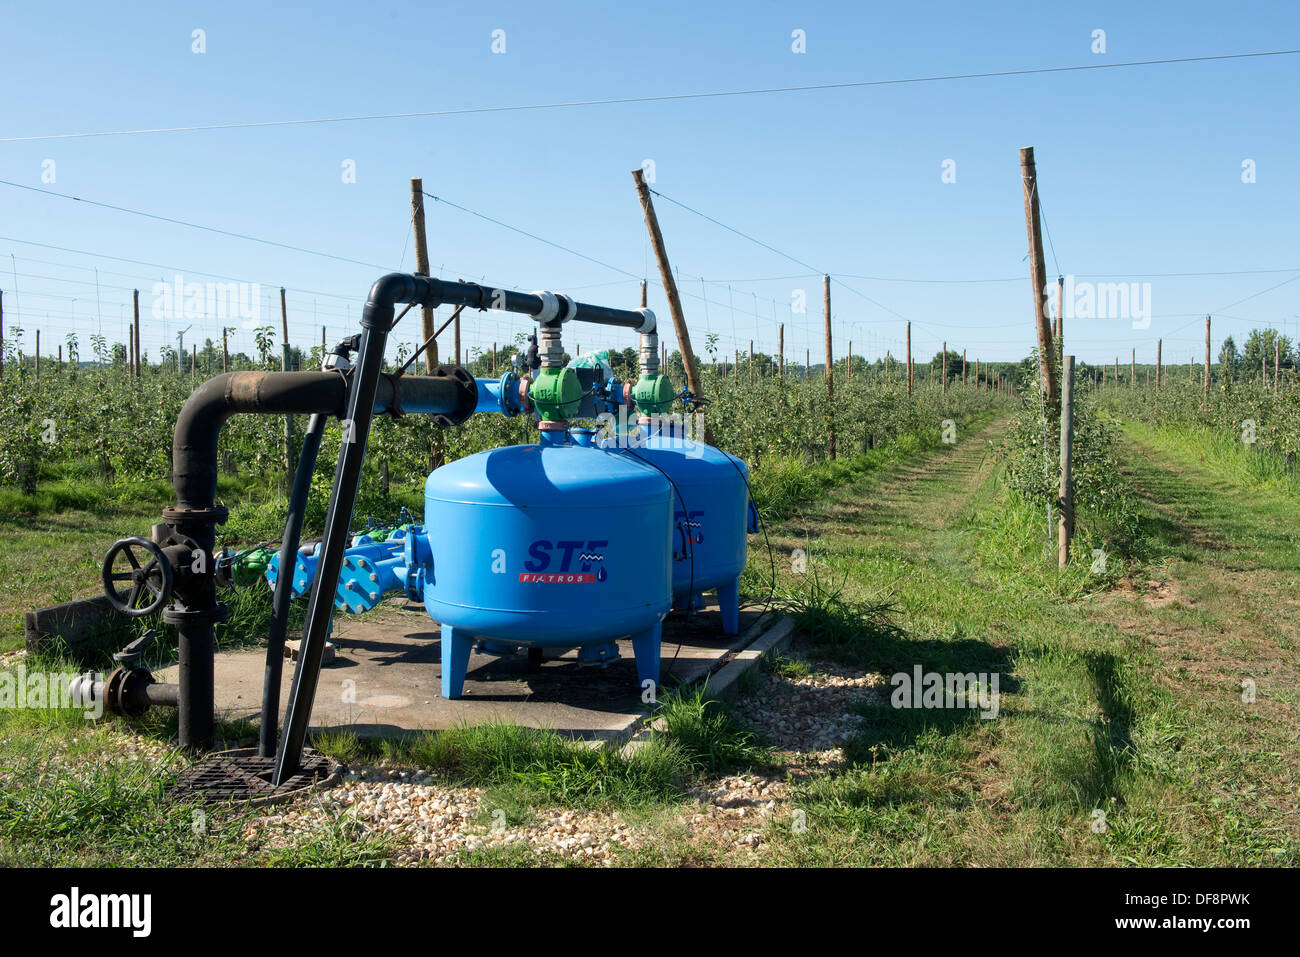 La pompe d'irrigation et de fertigation pour cordon apple trees à Sainte-Foy-la-Grande, France Banque D'Images